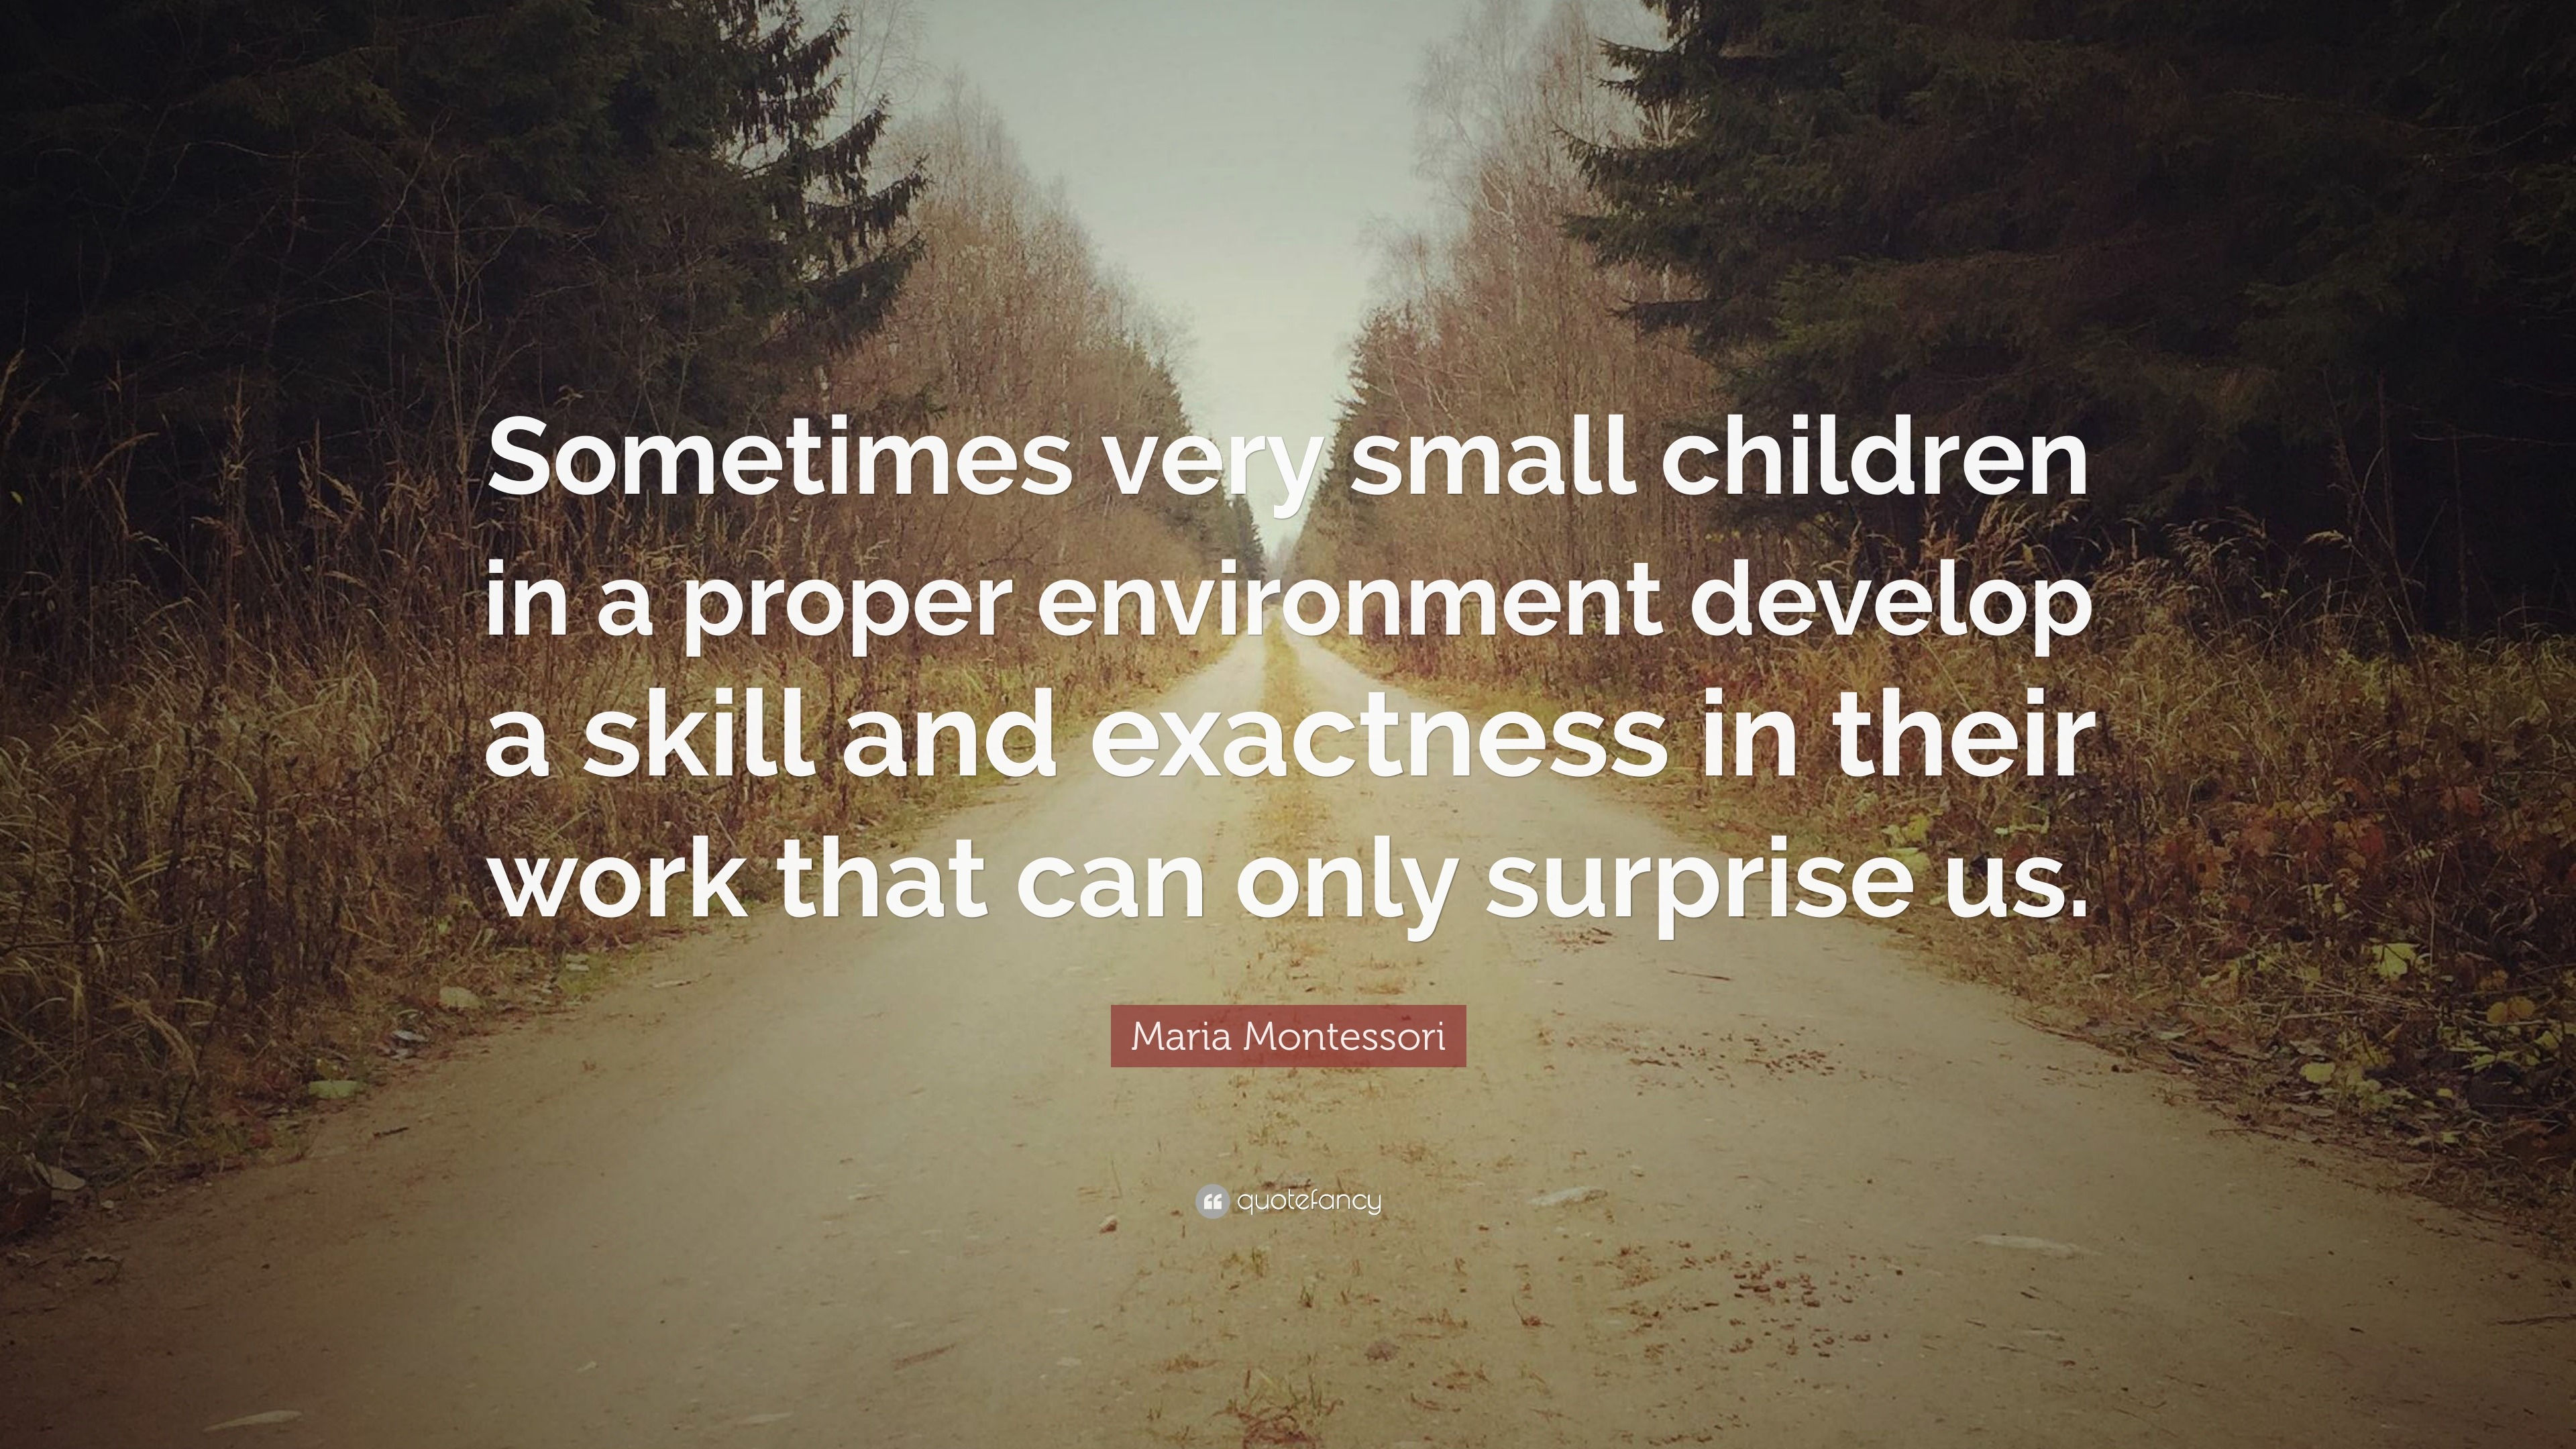 Maria Montessori Quote: “Sometimes very small children in a proper